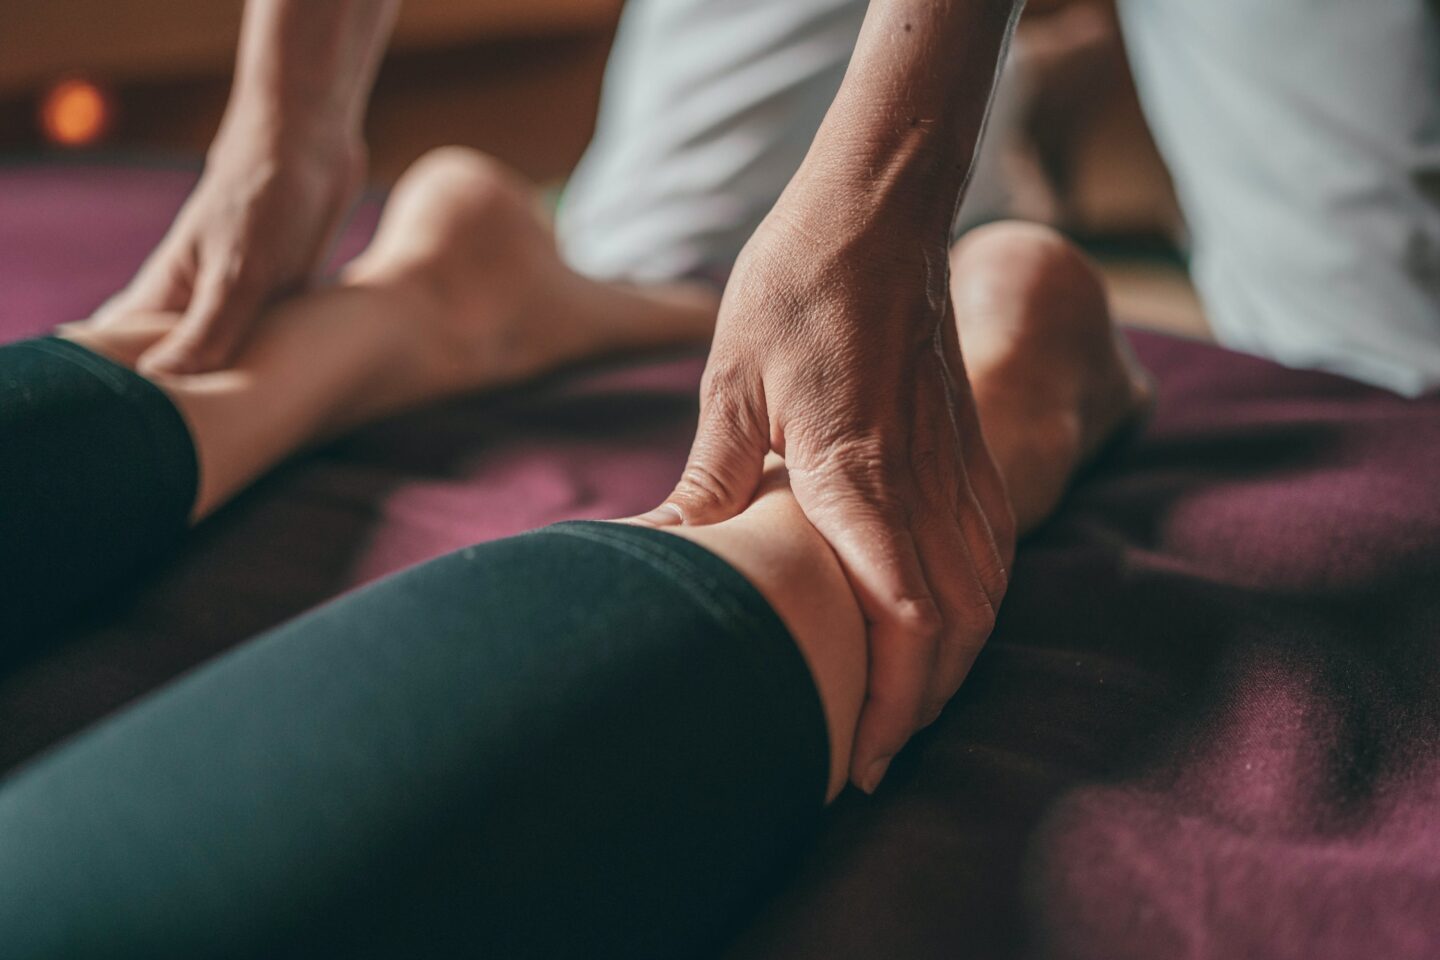 massage hands on legs